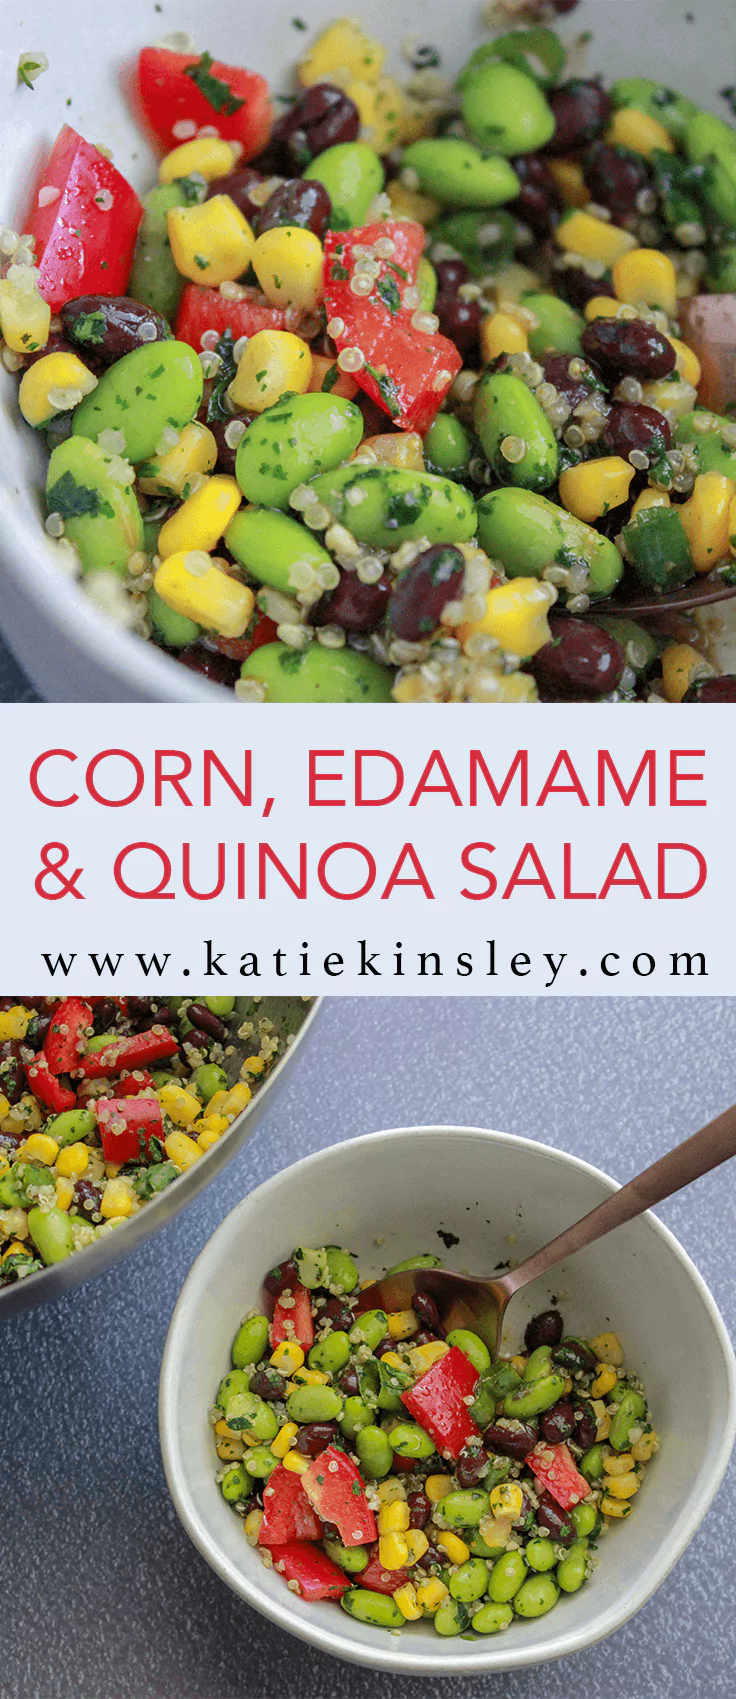 Corn Edamame and Quinoa Salad